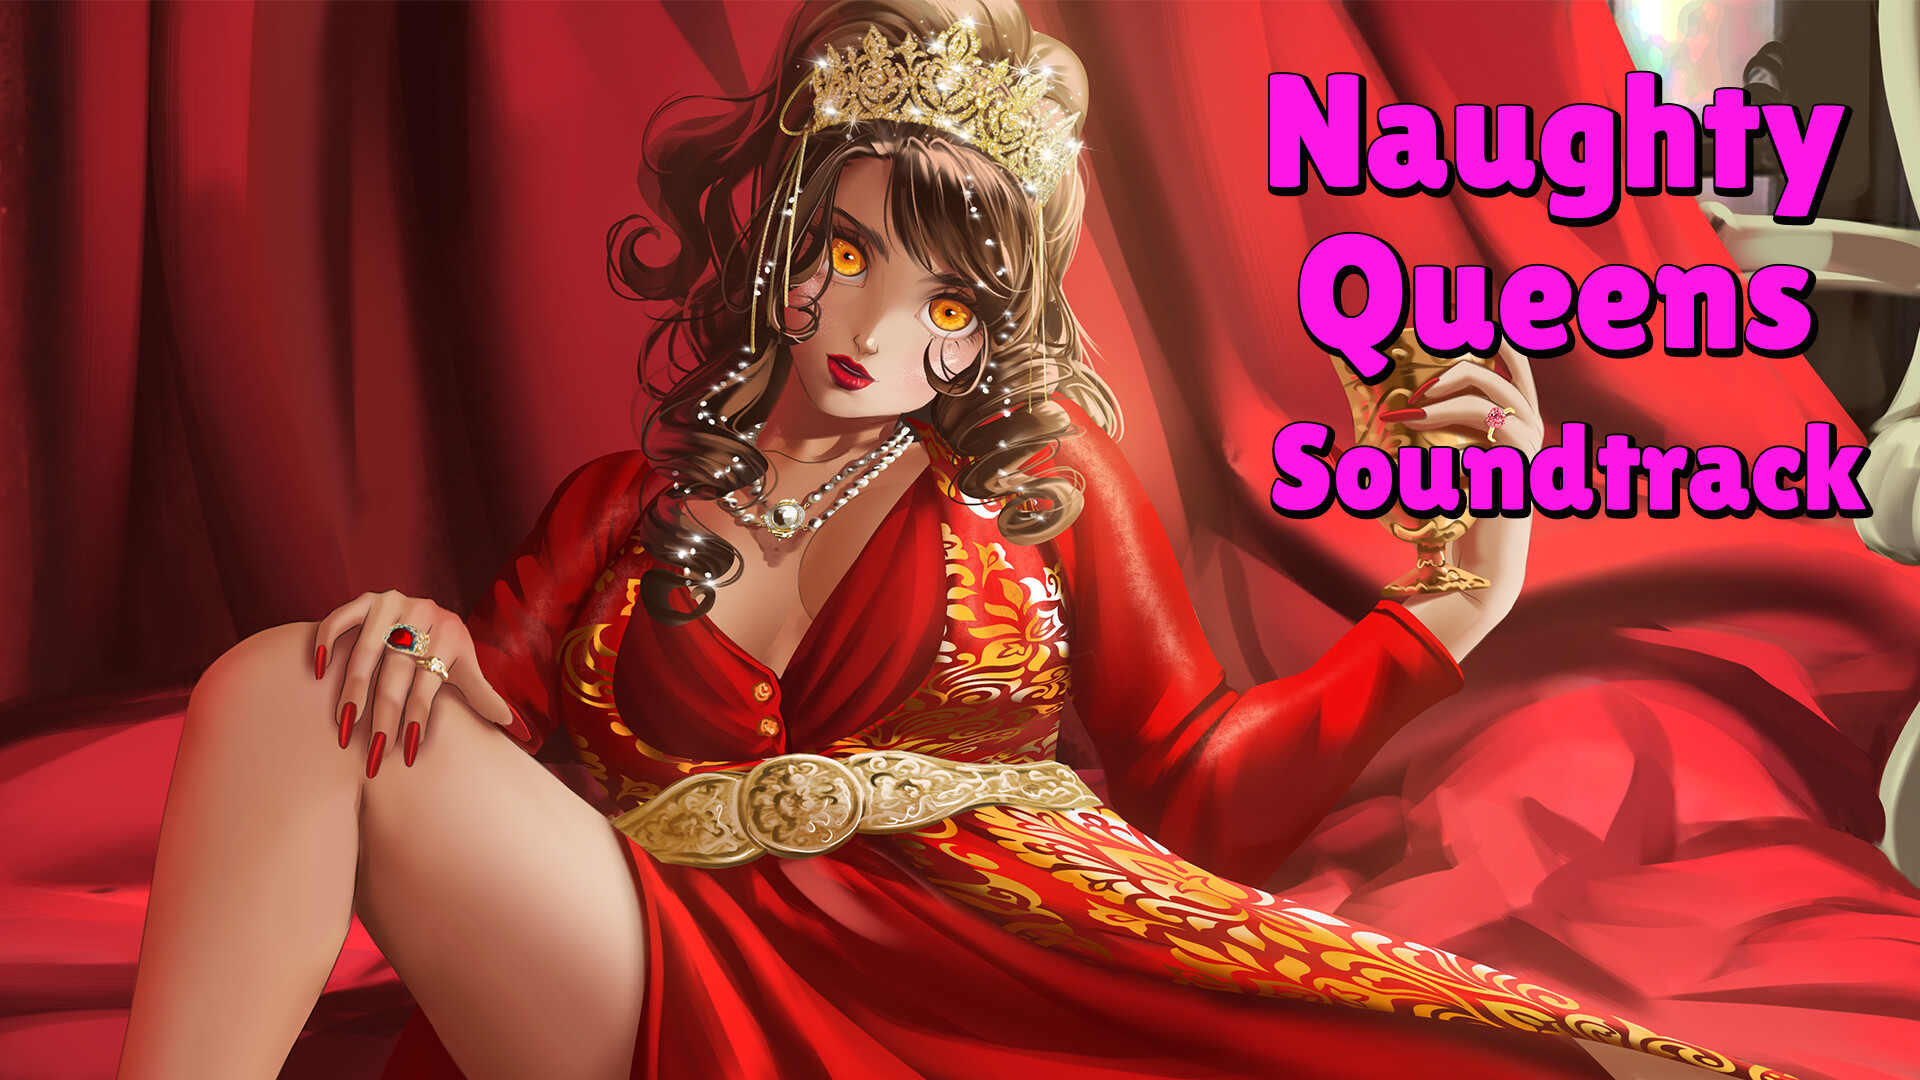 Naughty Queens Soundtrack Featured Screenshot #1